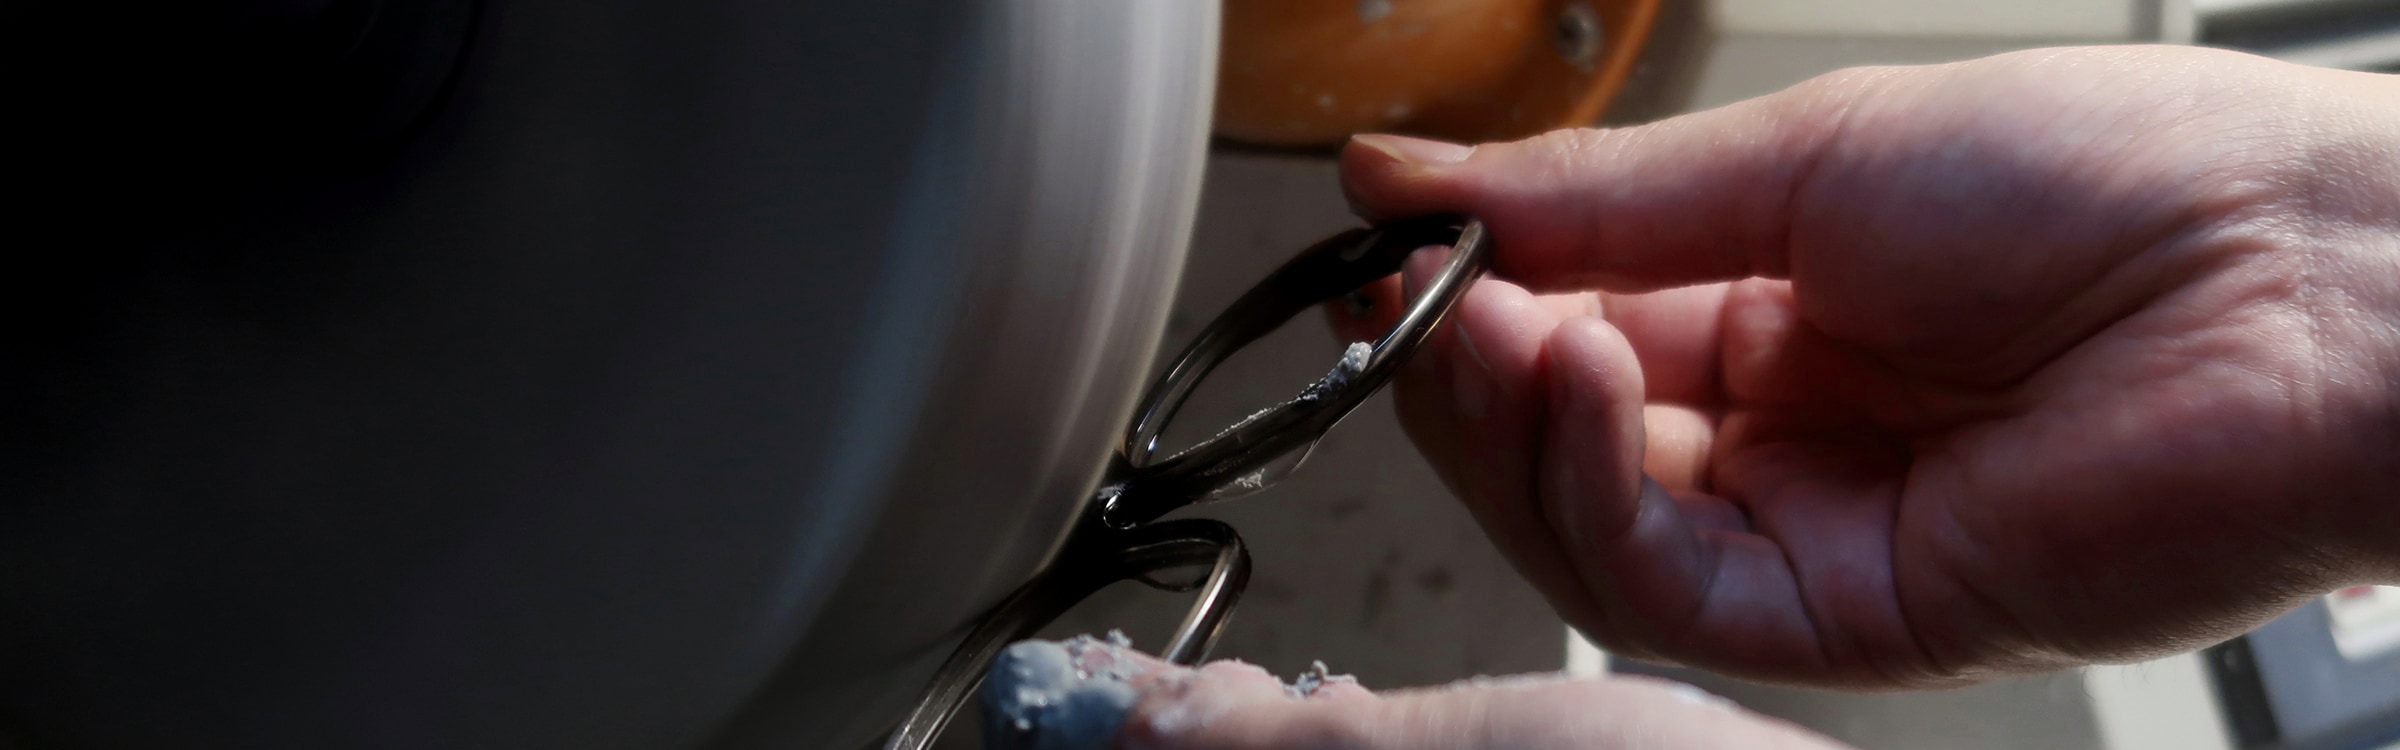 市場 メール便送料無料 ポリッシングクリーム 鯖江の眼鏡修理再生工房推奨 セルワックス セルロイド アセテートフレーム用のメンテナンスワックス